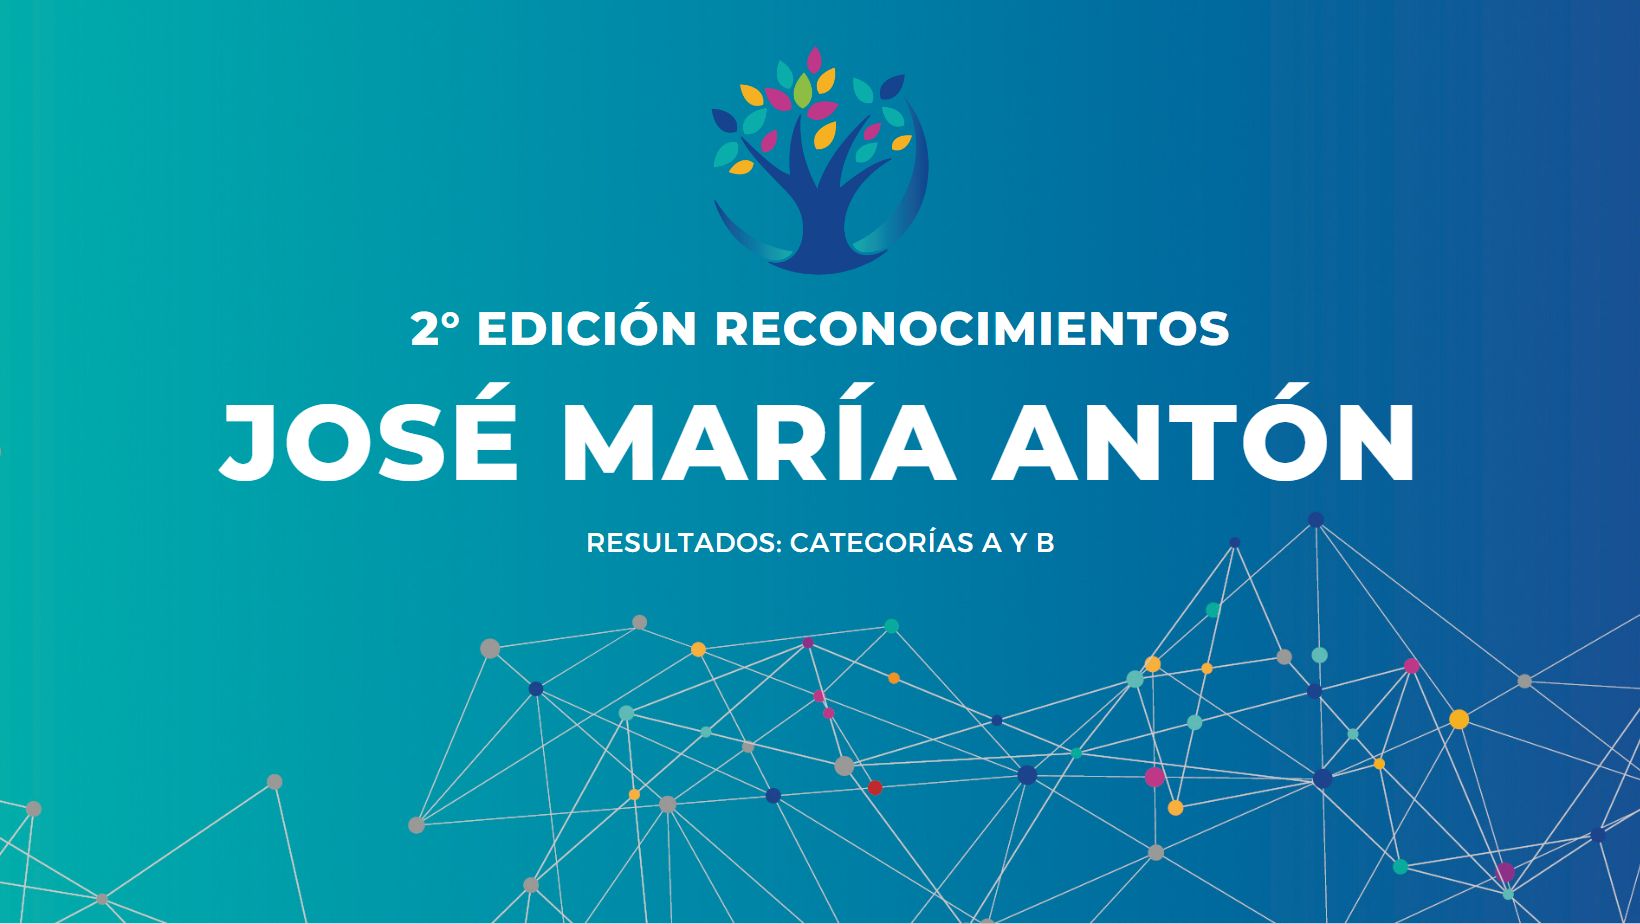 Reconocimientos José María Antón: estas son las iniciativas que están transformando la Educación desde la innovación